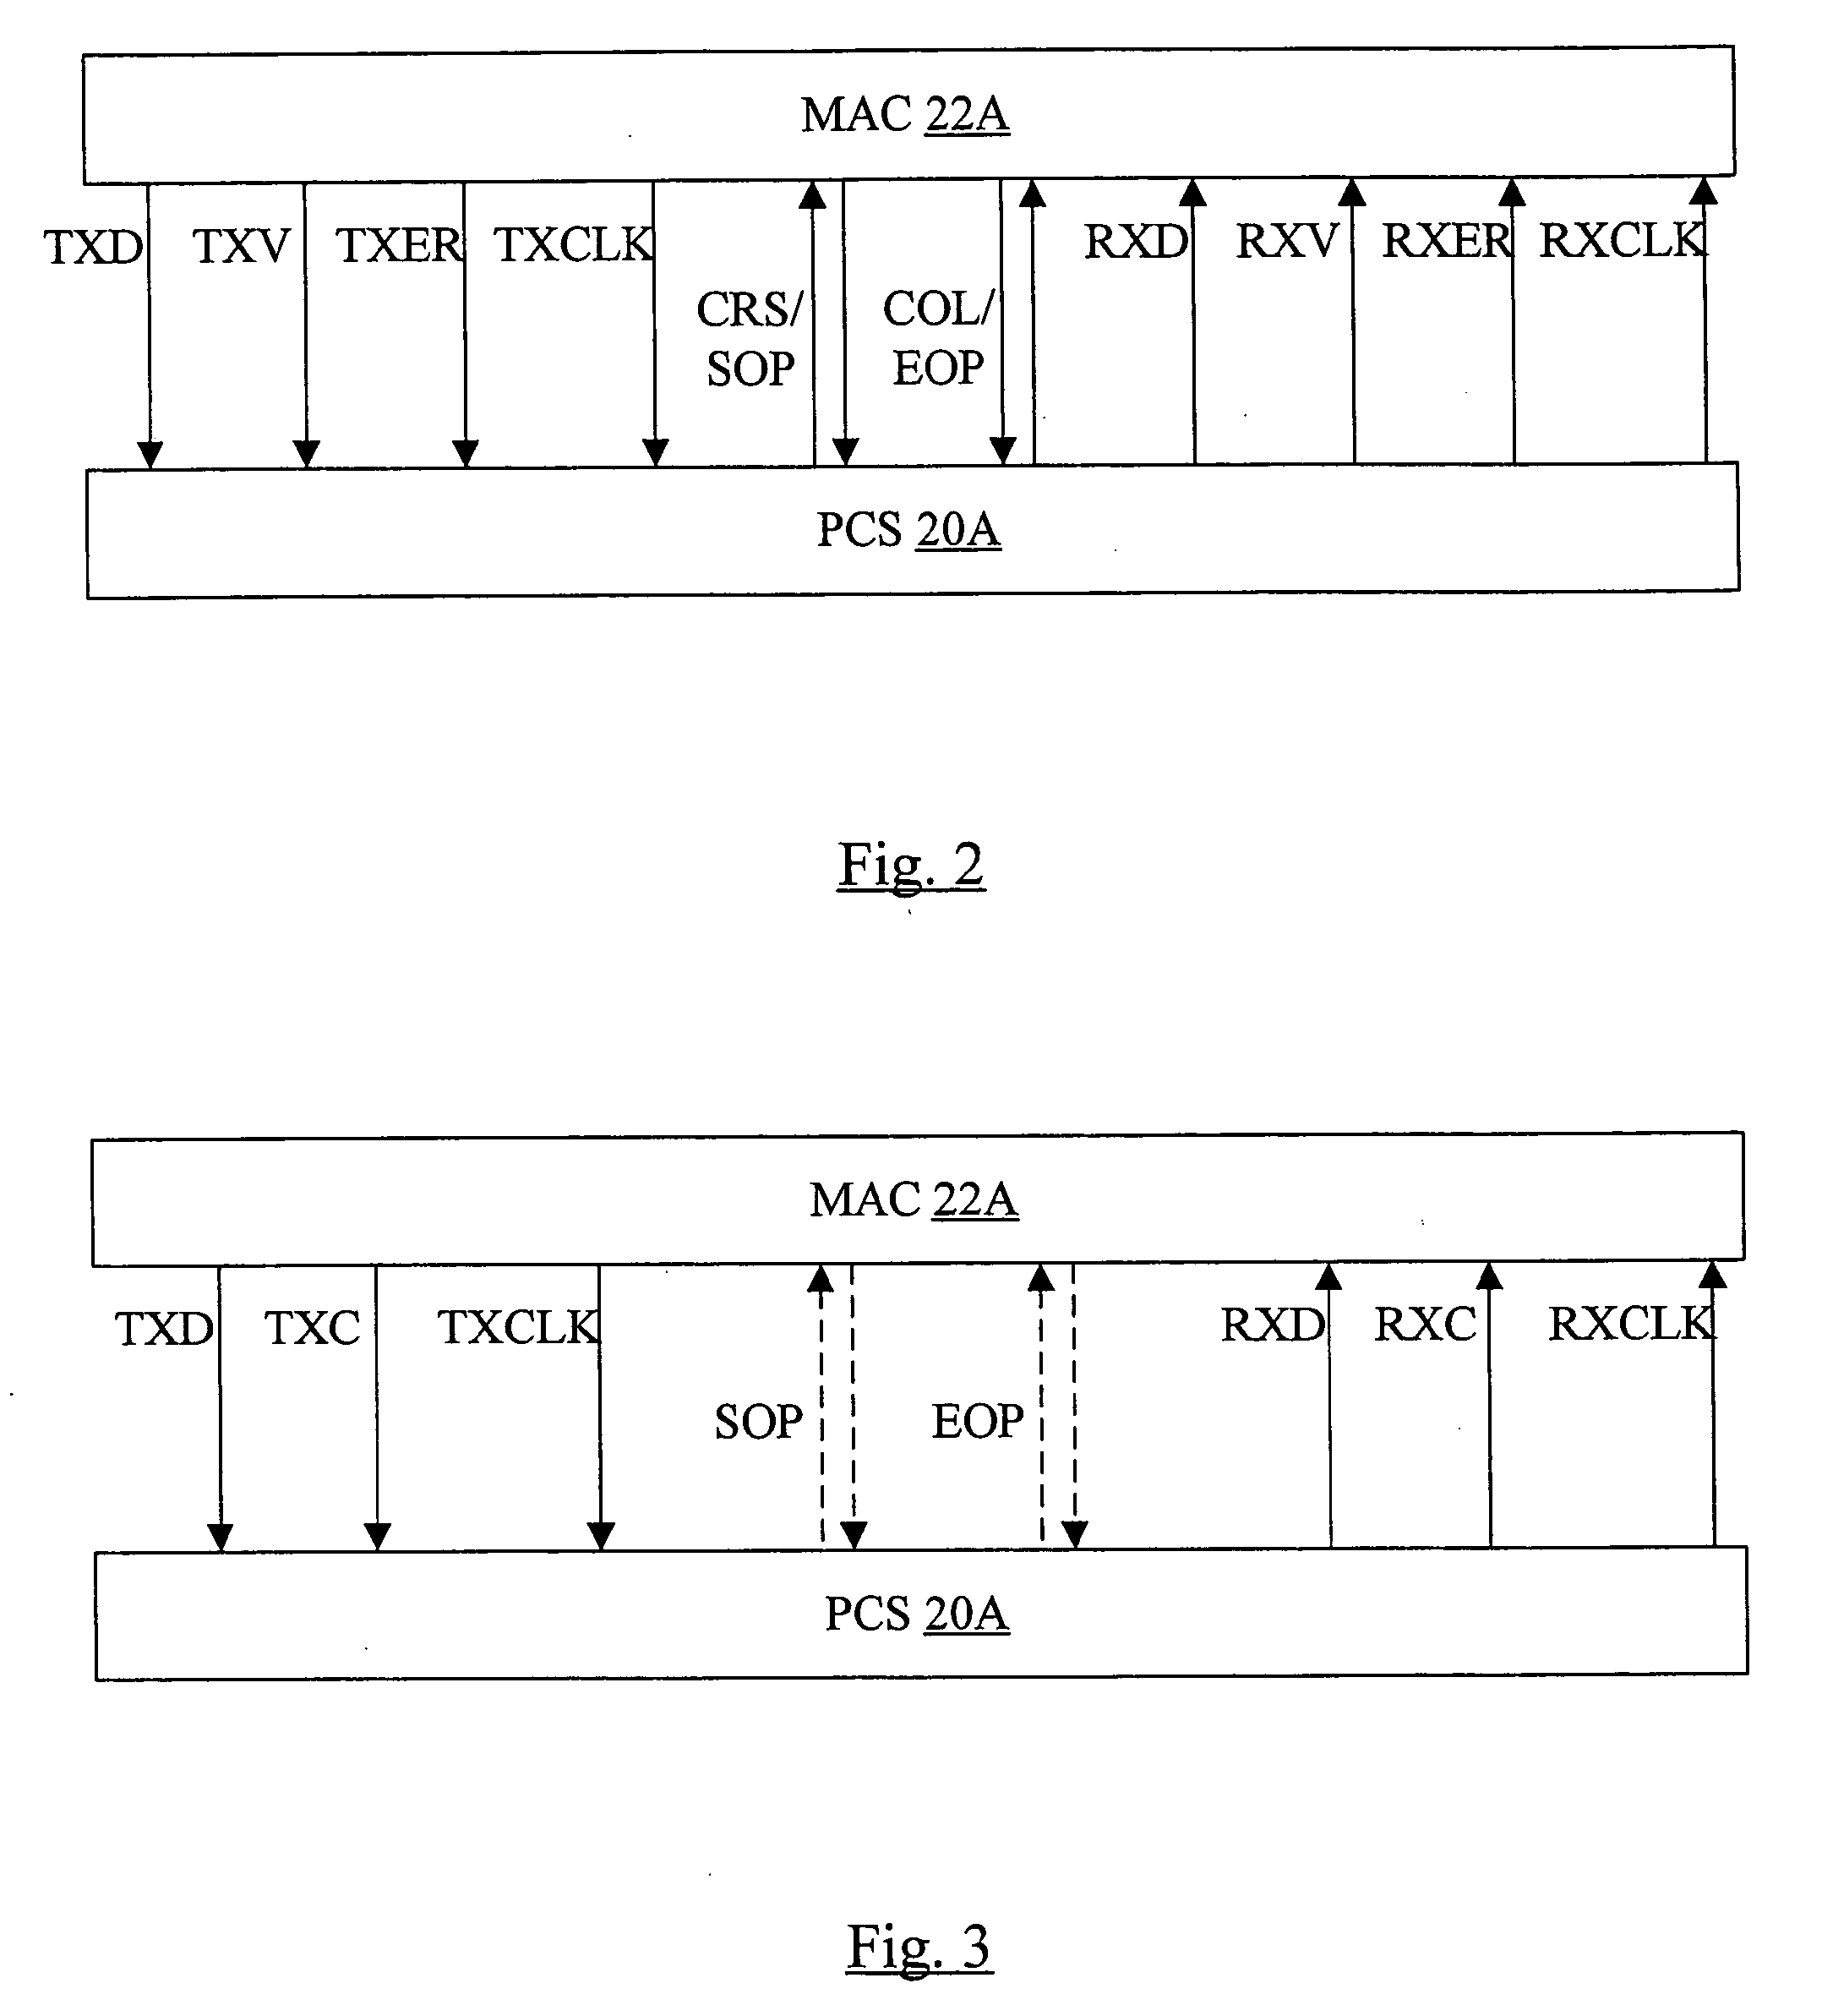 Explicit Flow Control in a Gigabit/10 Gigabit Ethernet System